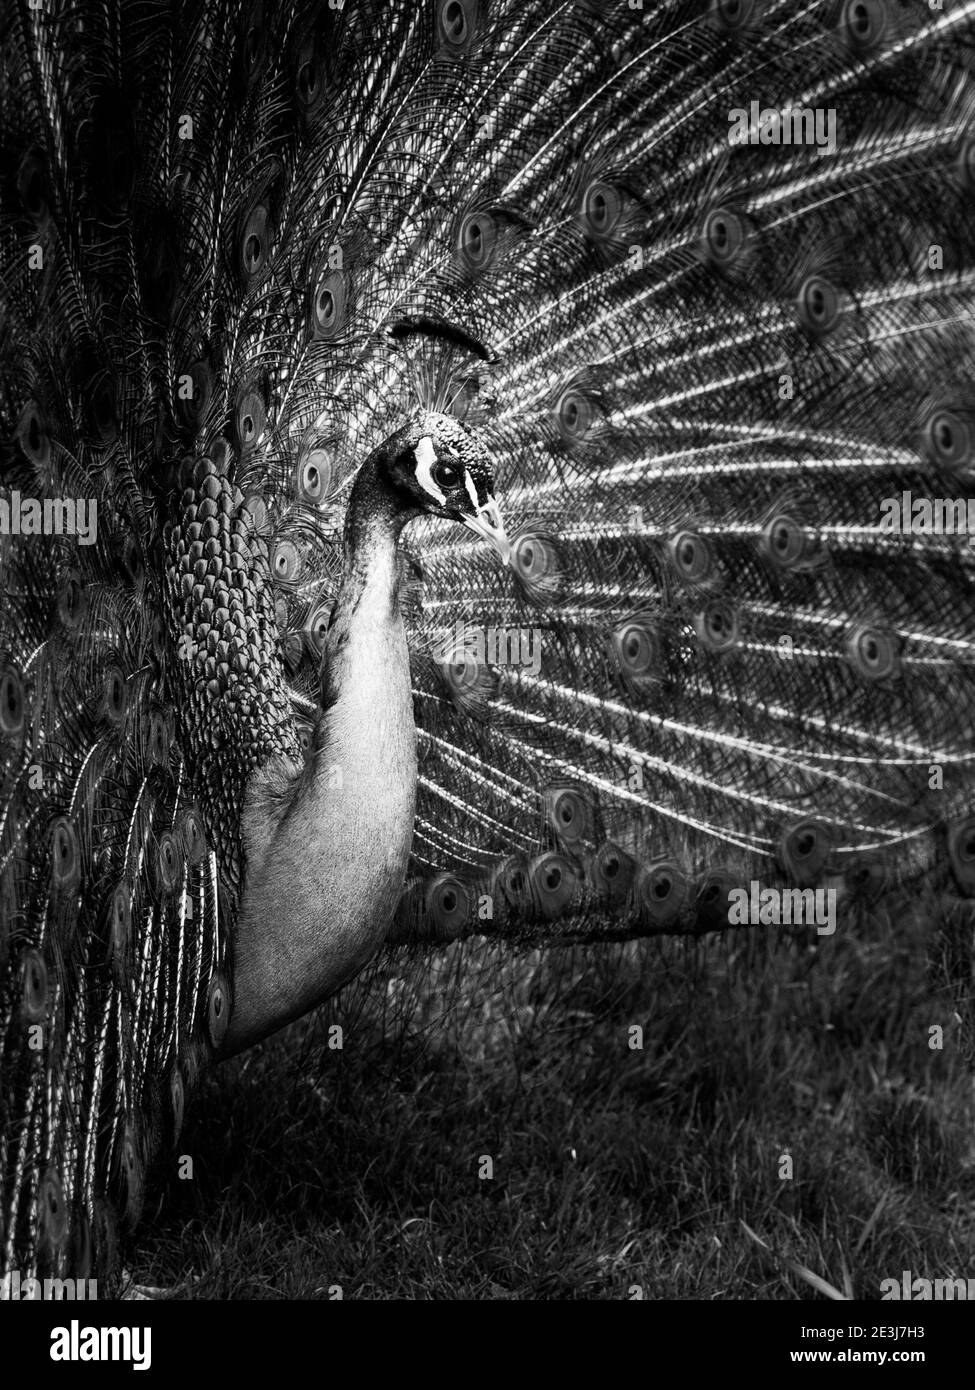 Portrait en gros plan de paon avec plumes étalées. Image clé basse. Image en noir et blanc. Banque D'Images